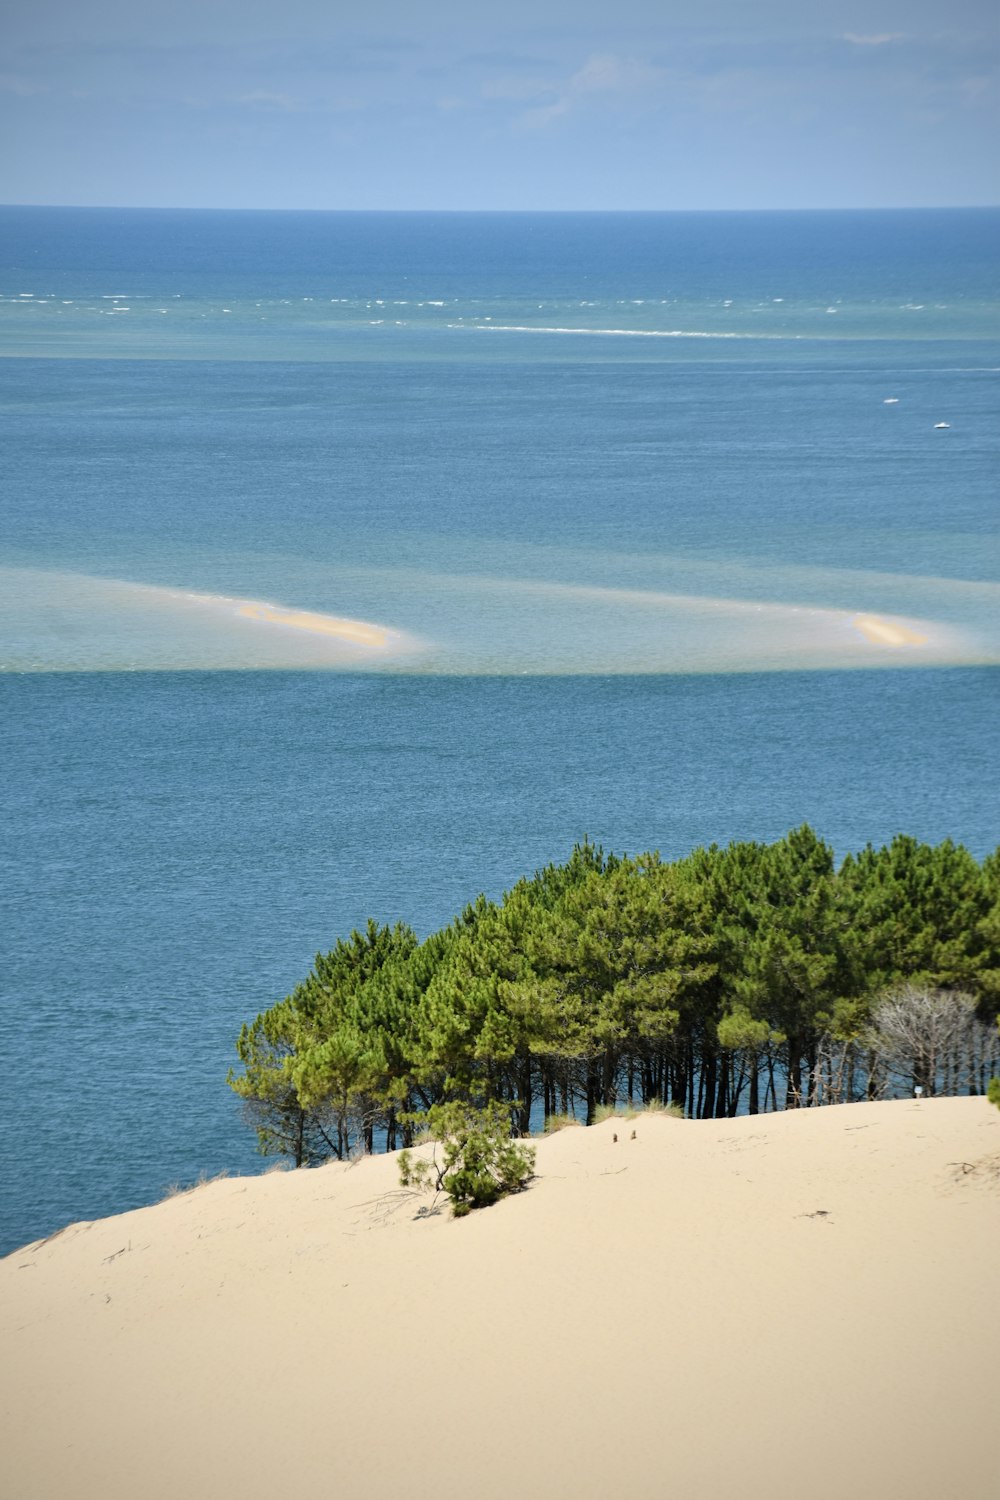 Un groupe d’arbres assis au sommet d’une plage de sable